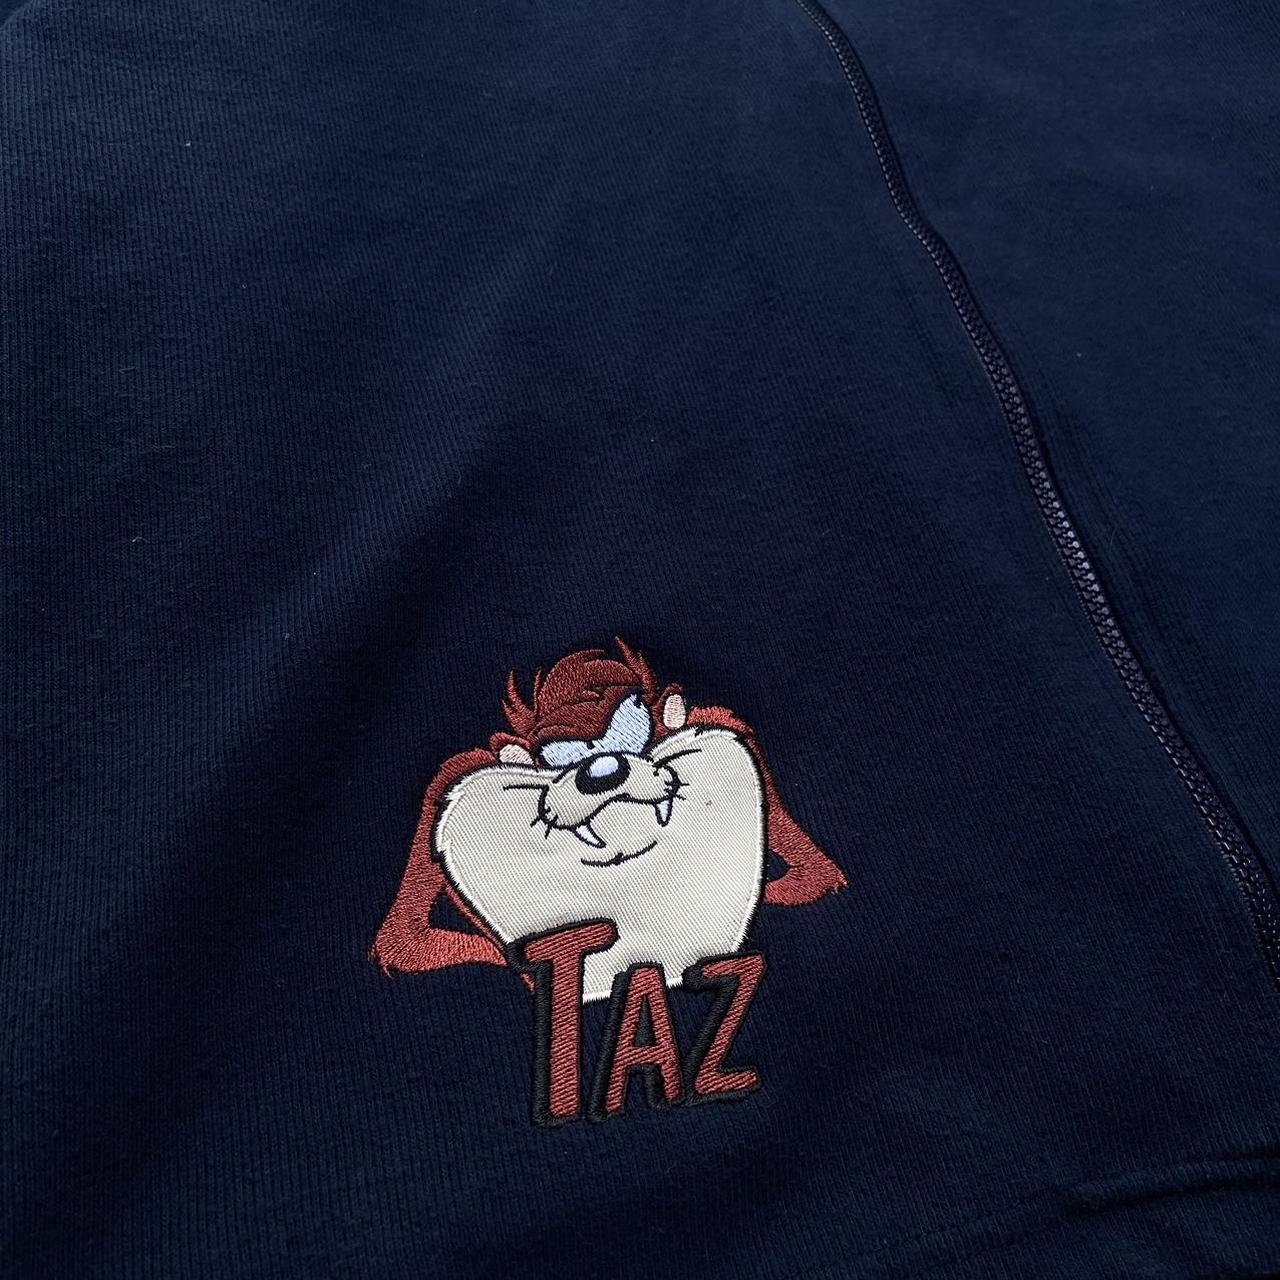 Vintage Looney Tunes taz zip hoodie 74 cm length x... - Depop